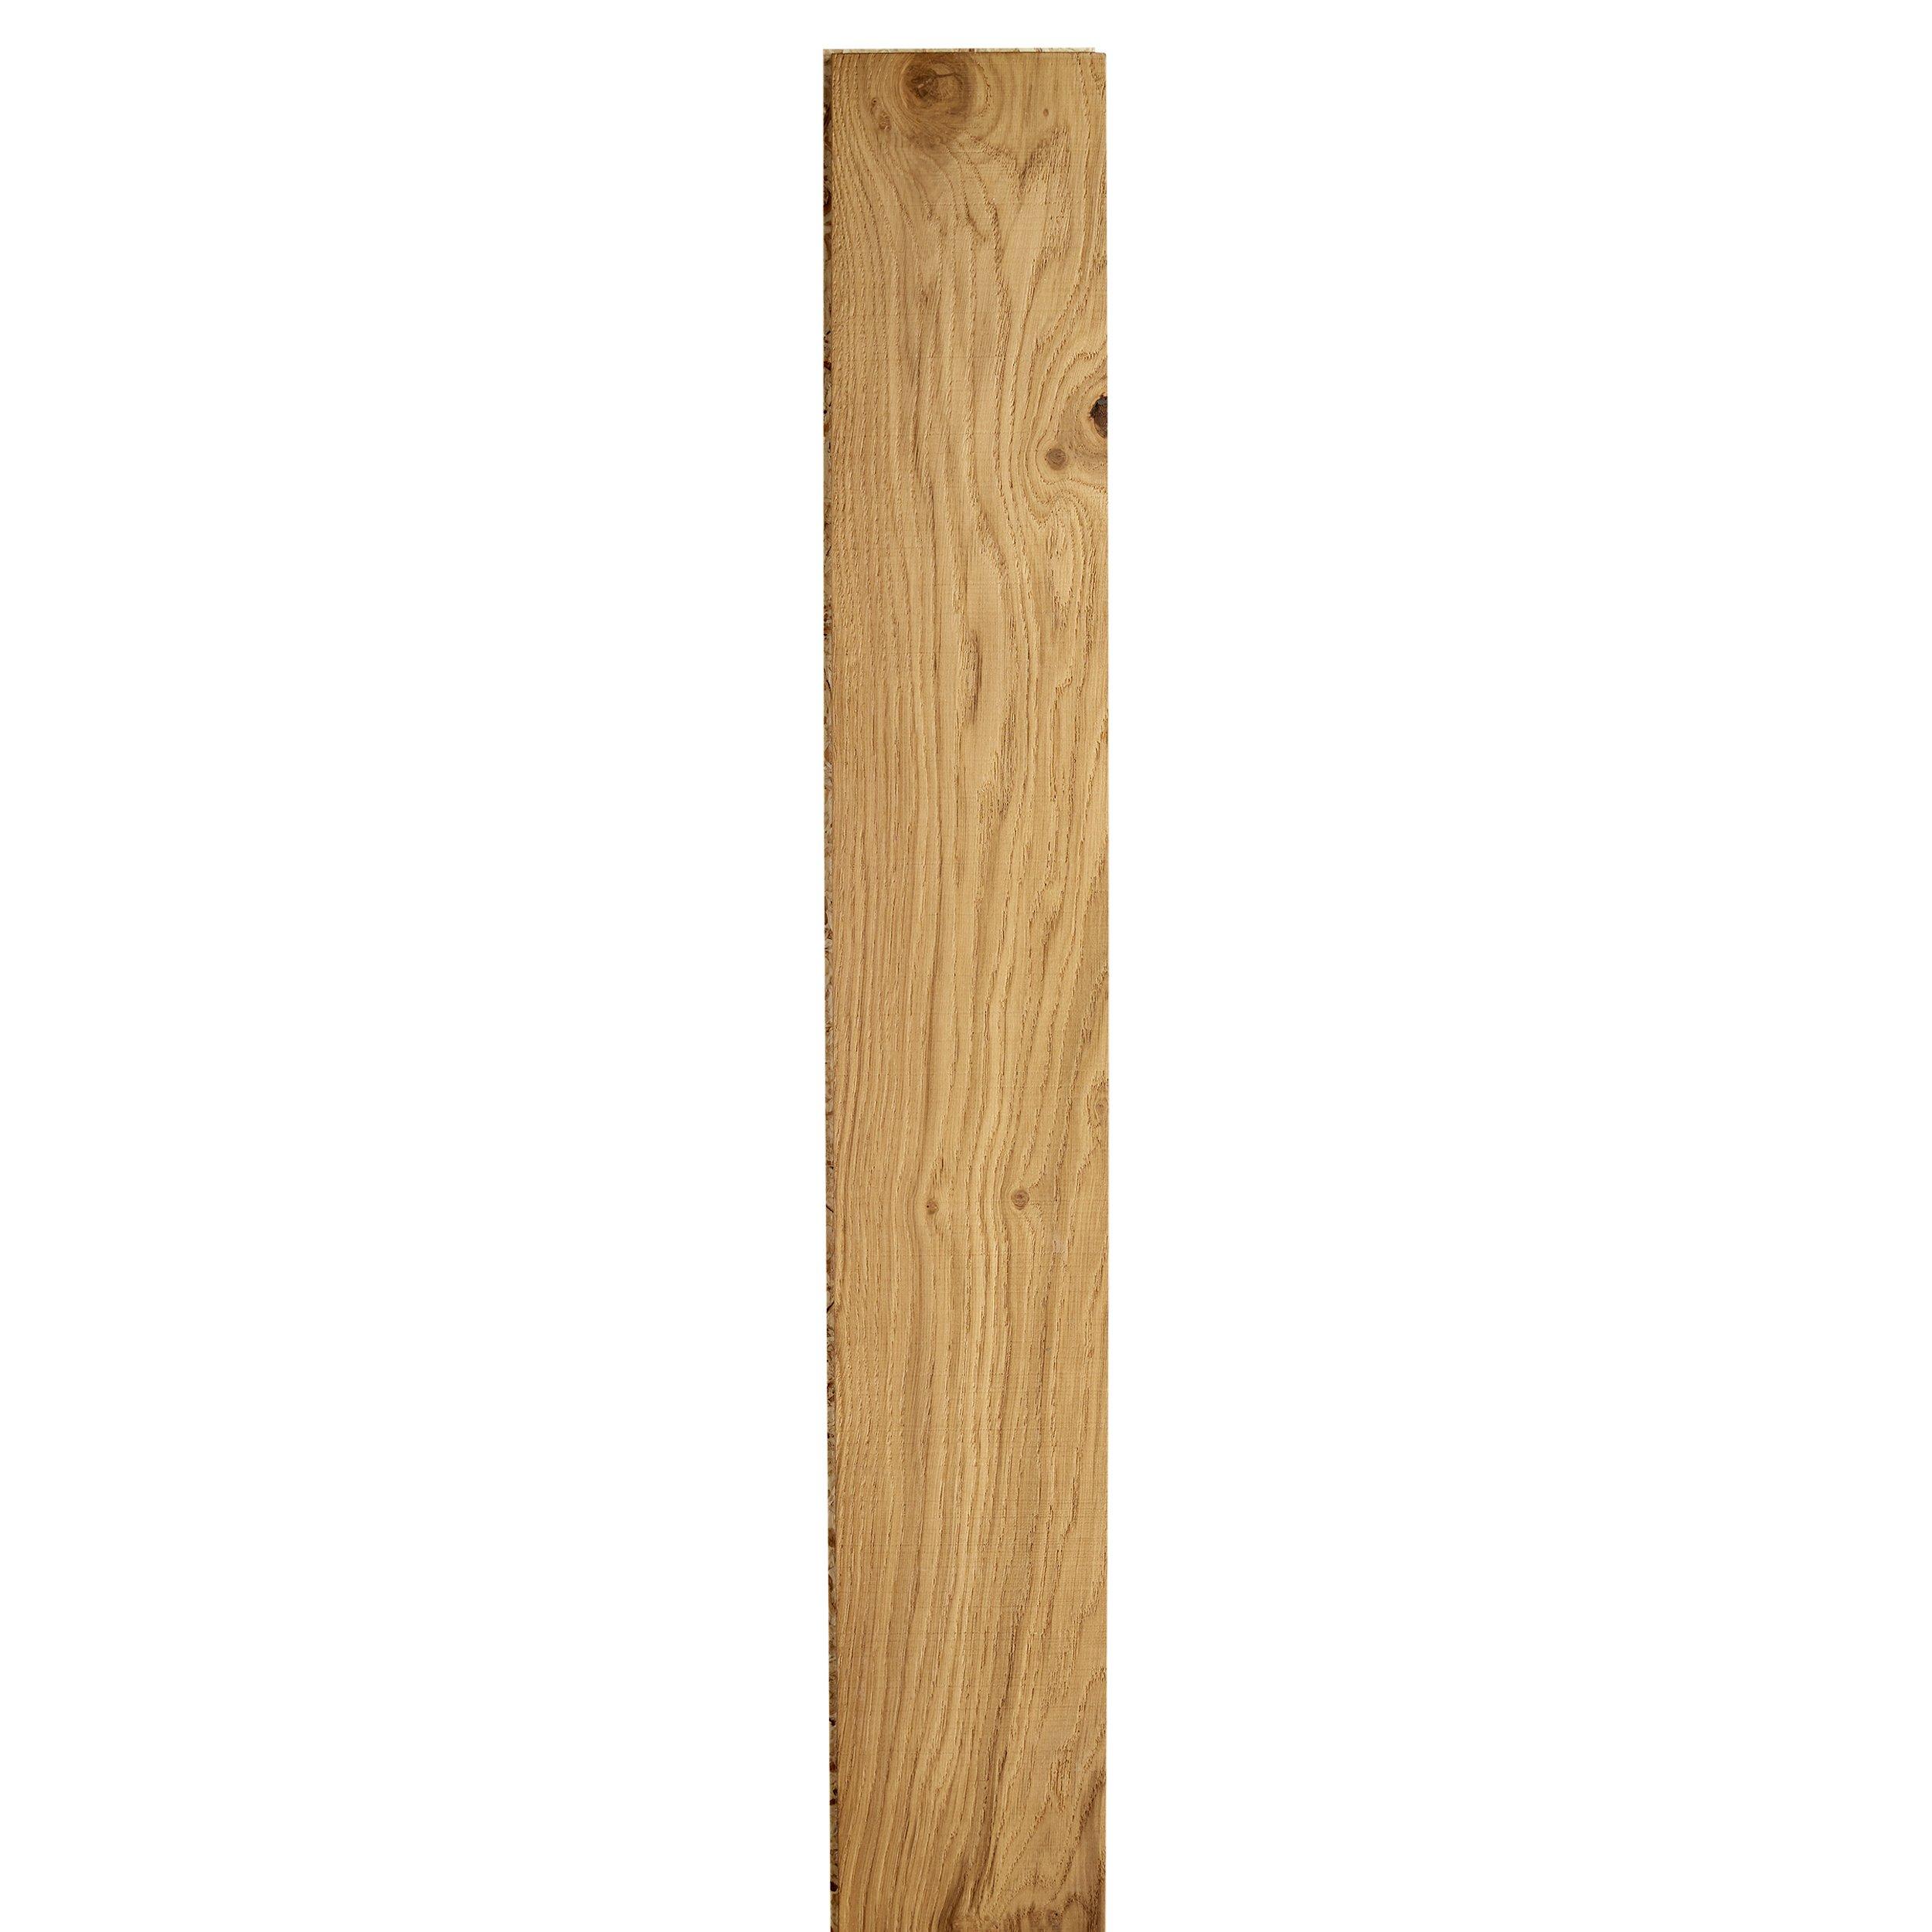 Pasture White Oak Distressed Engineered Hardwood